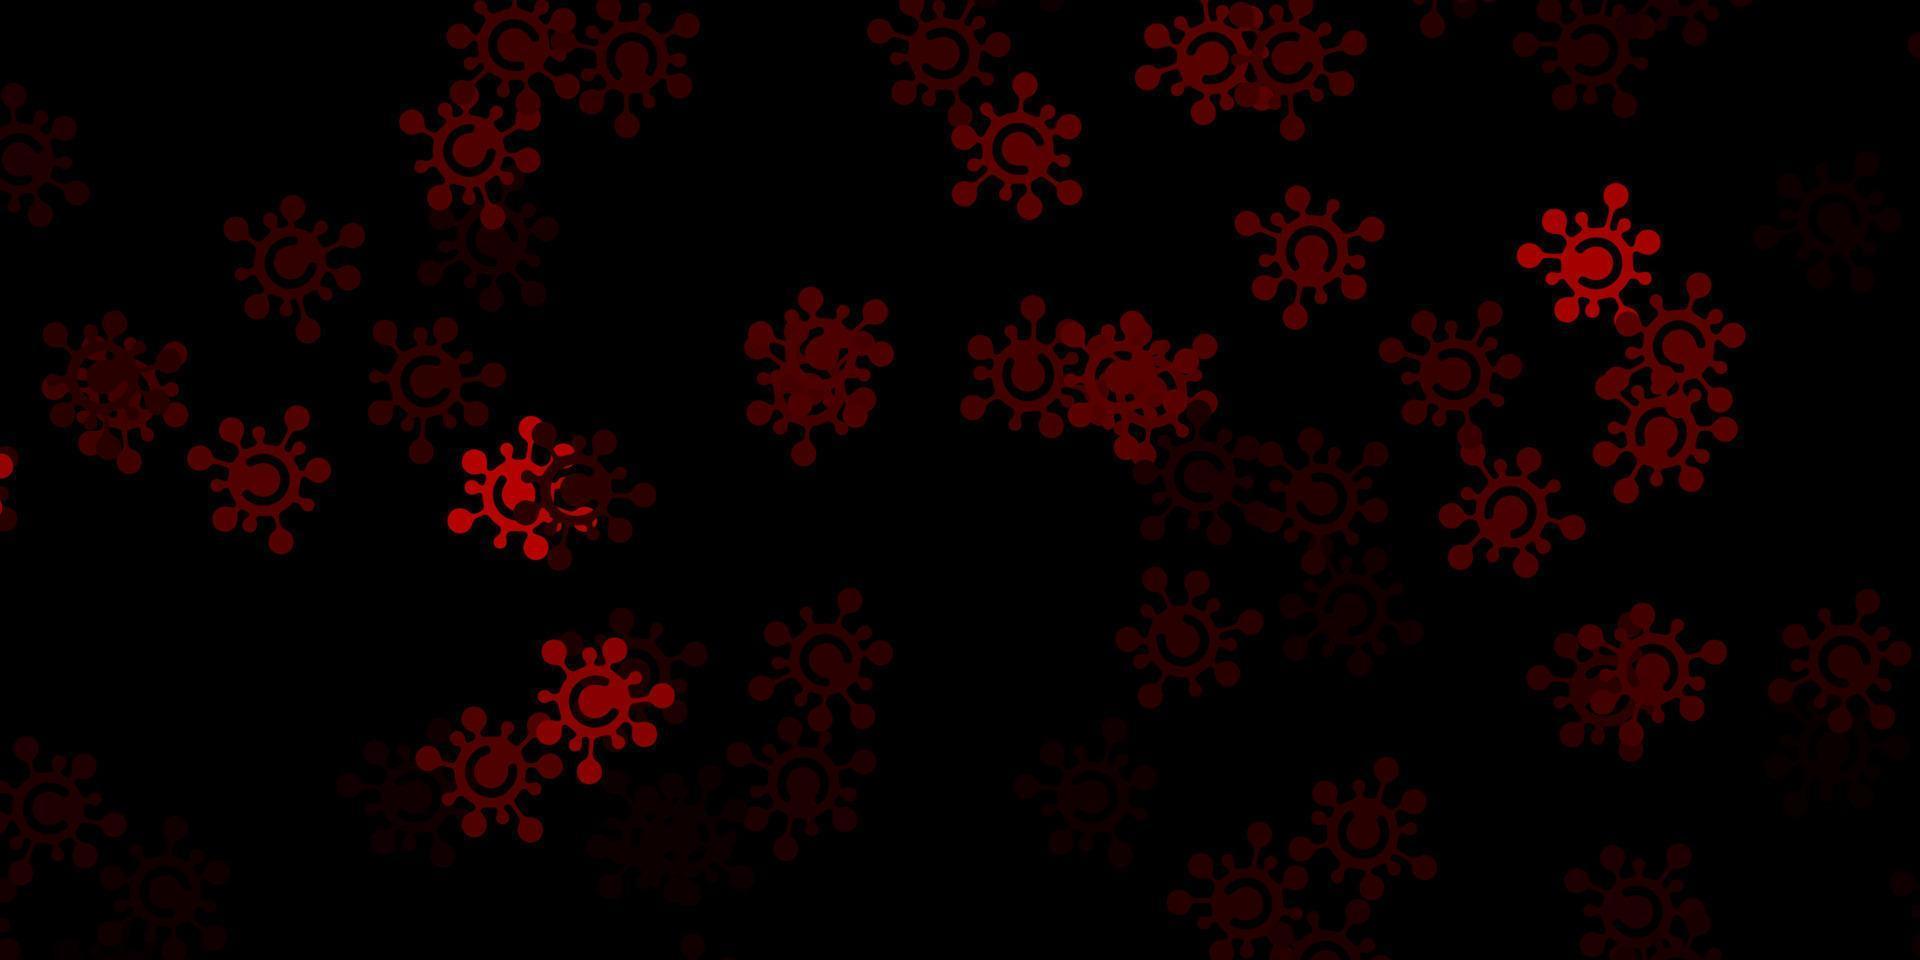 fundo de vetor rosa e vermelho escuro com símbolos de vírus.